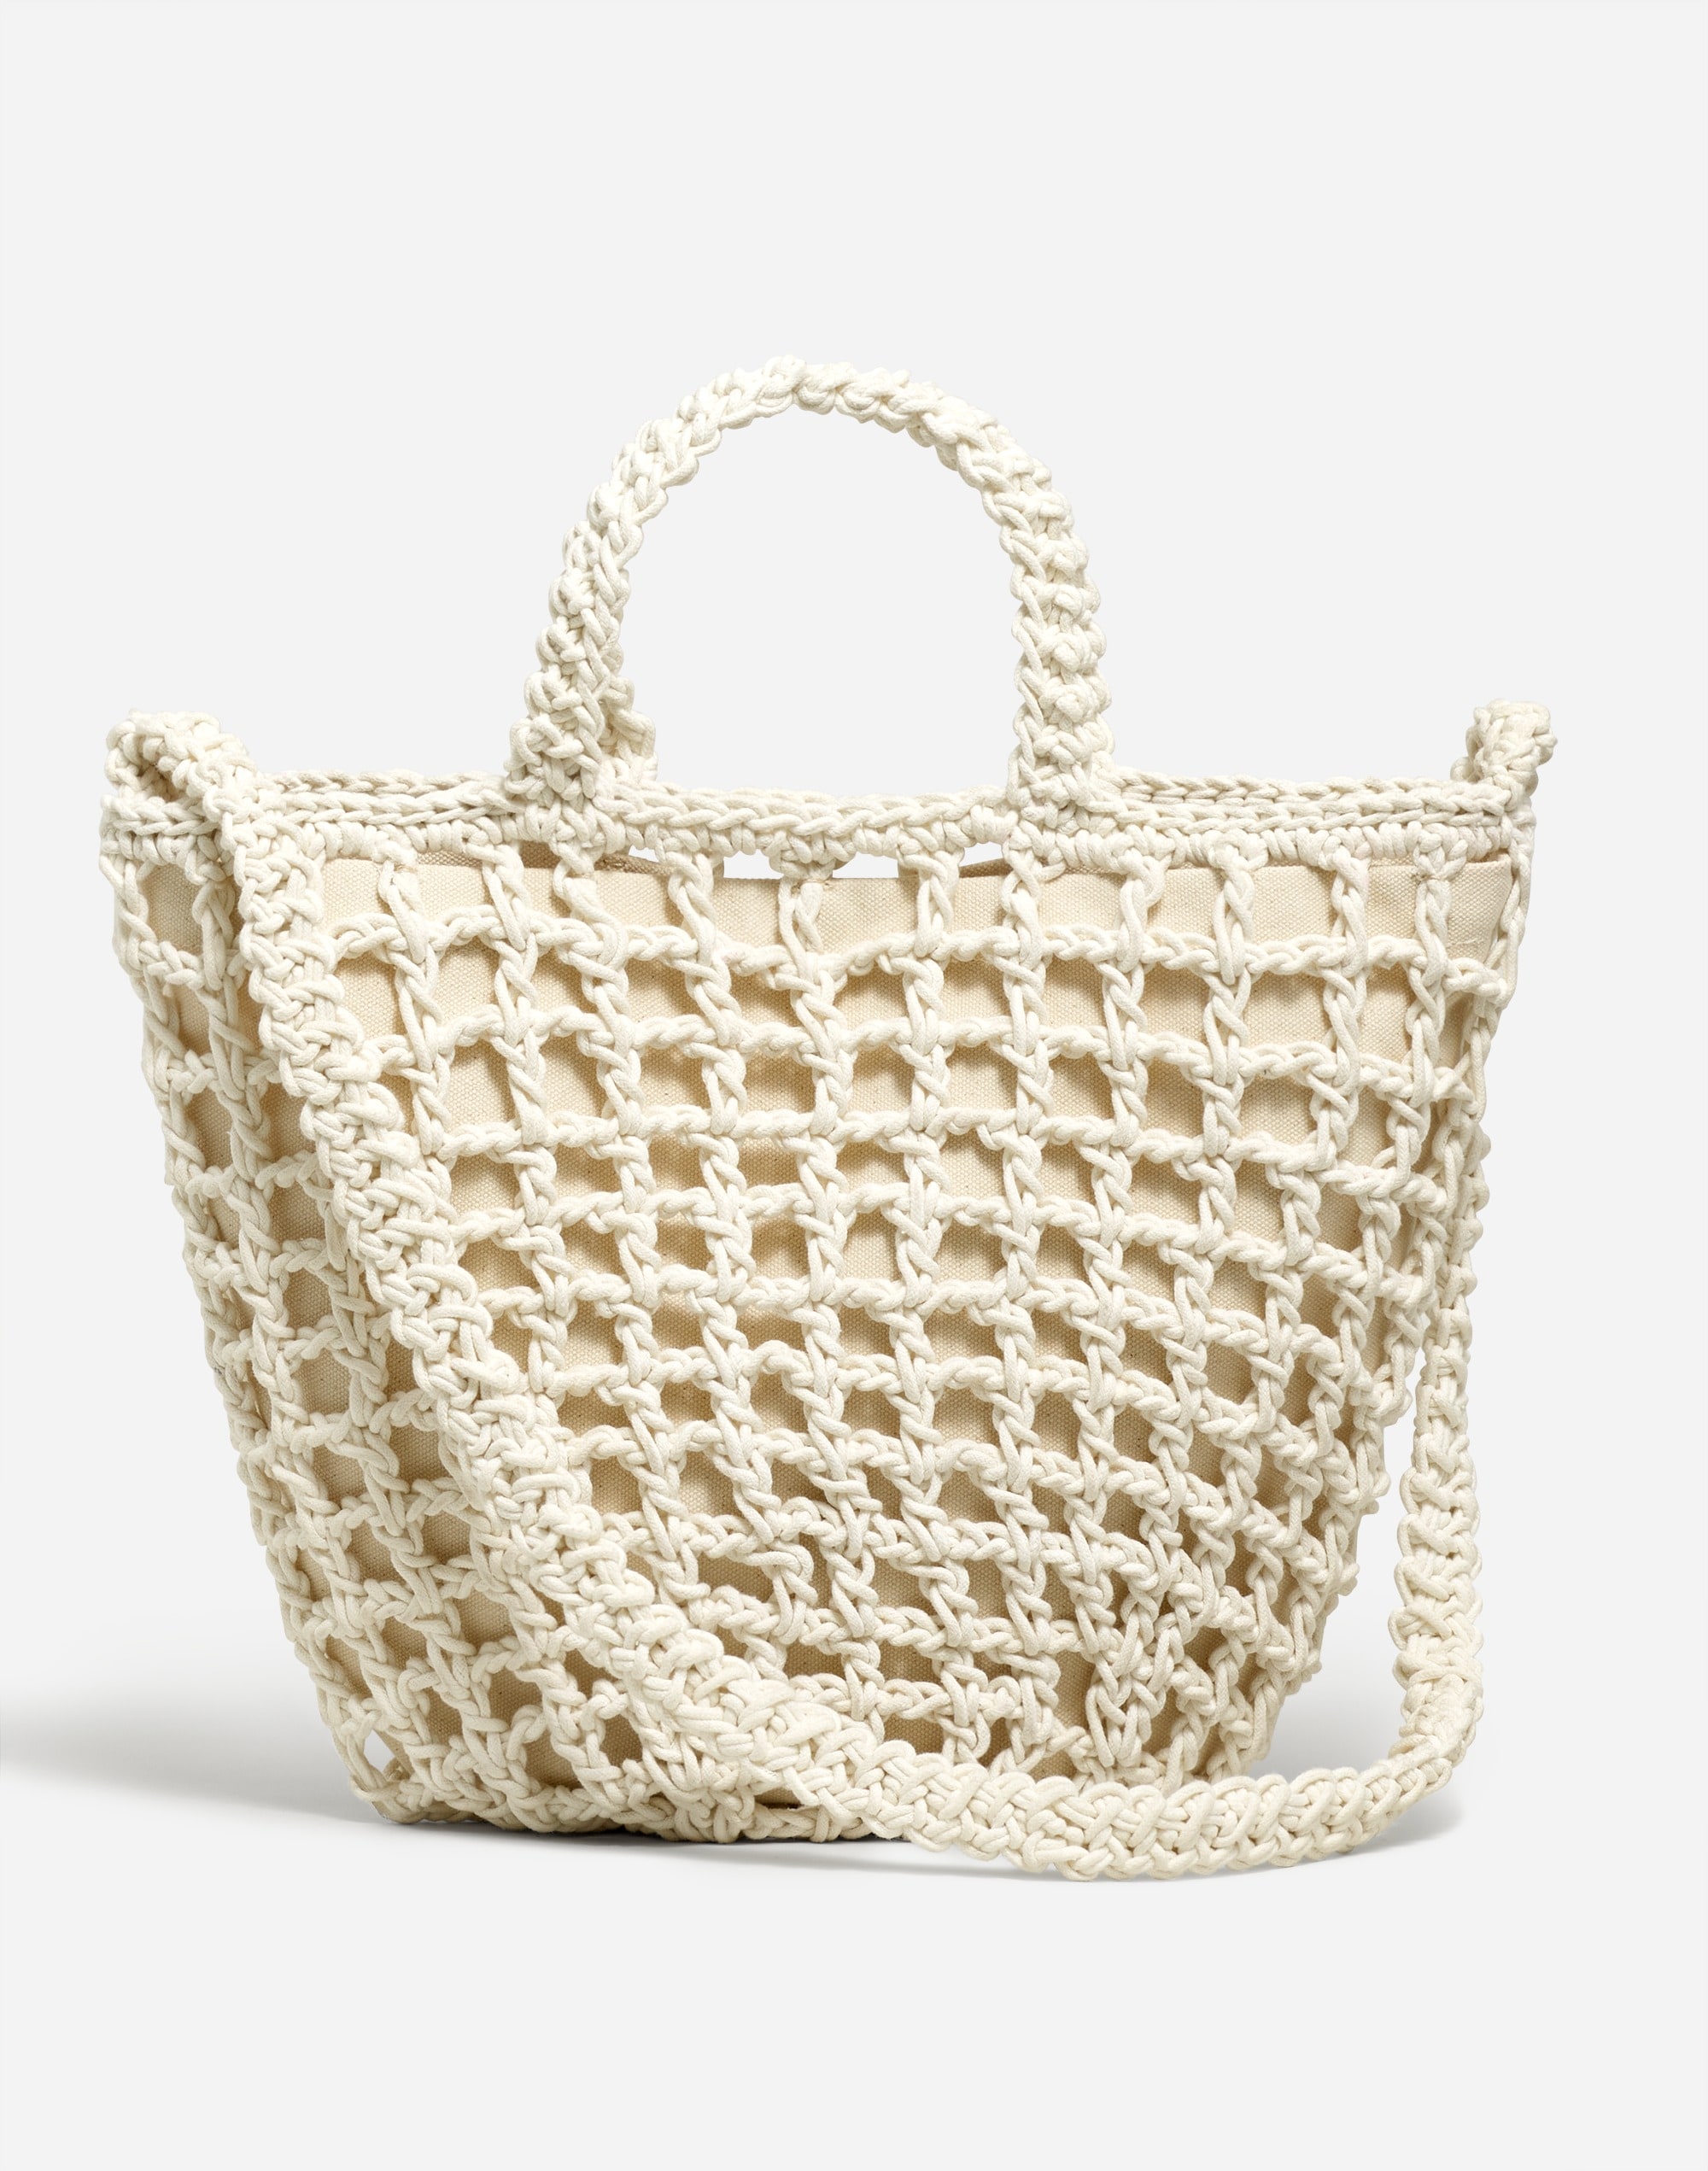 The Crocheted Shoulder Bag